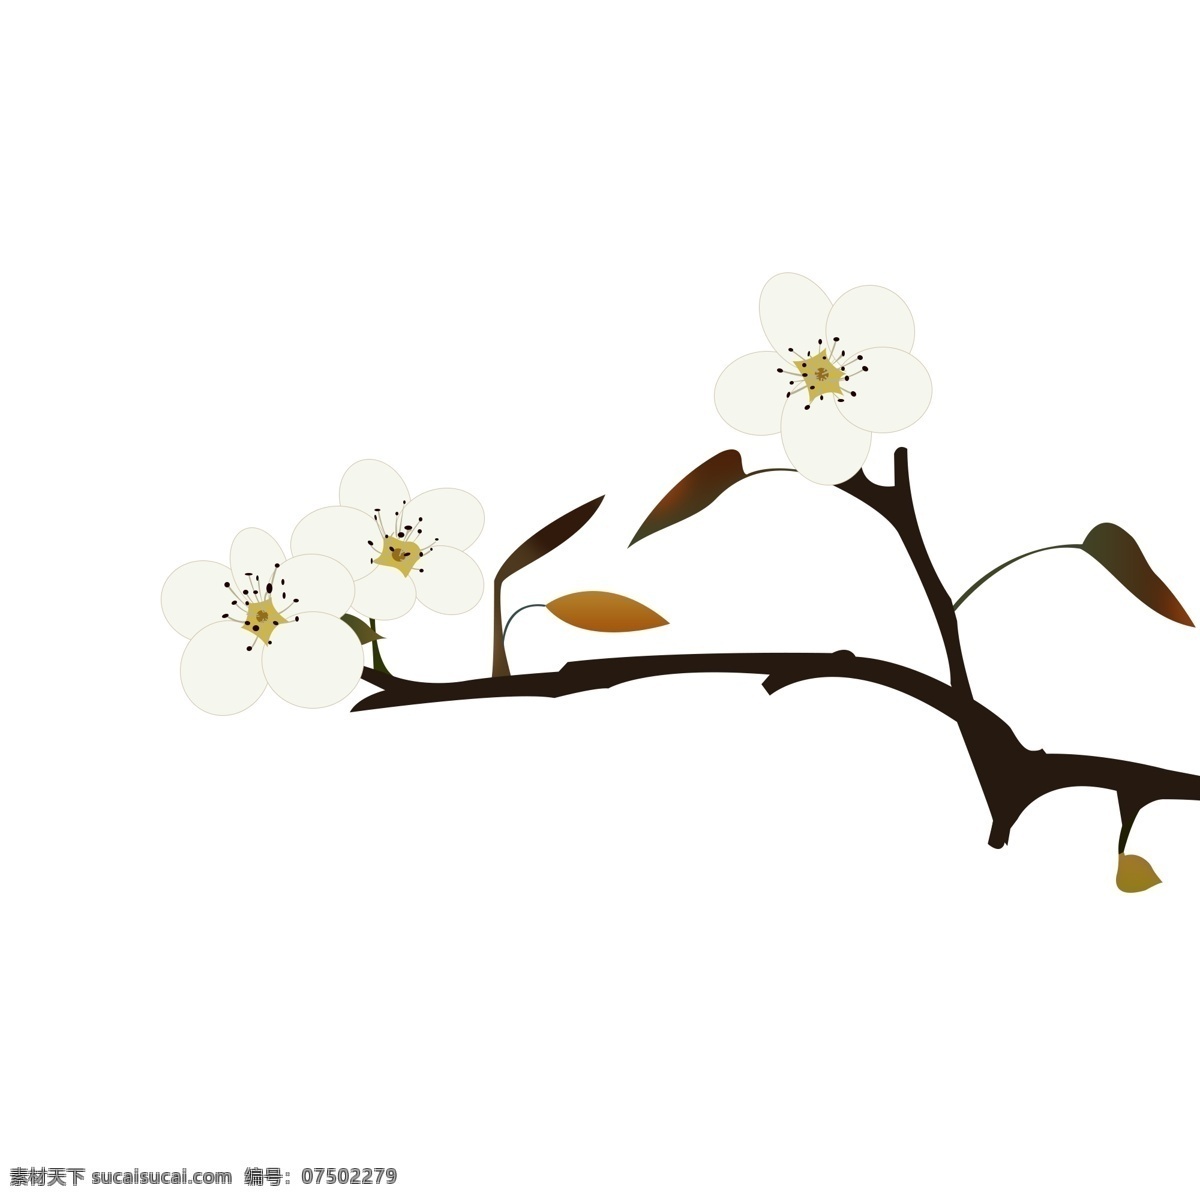 梨花 手绘 小 清晰 白色 花朵 小清新 白色花朵